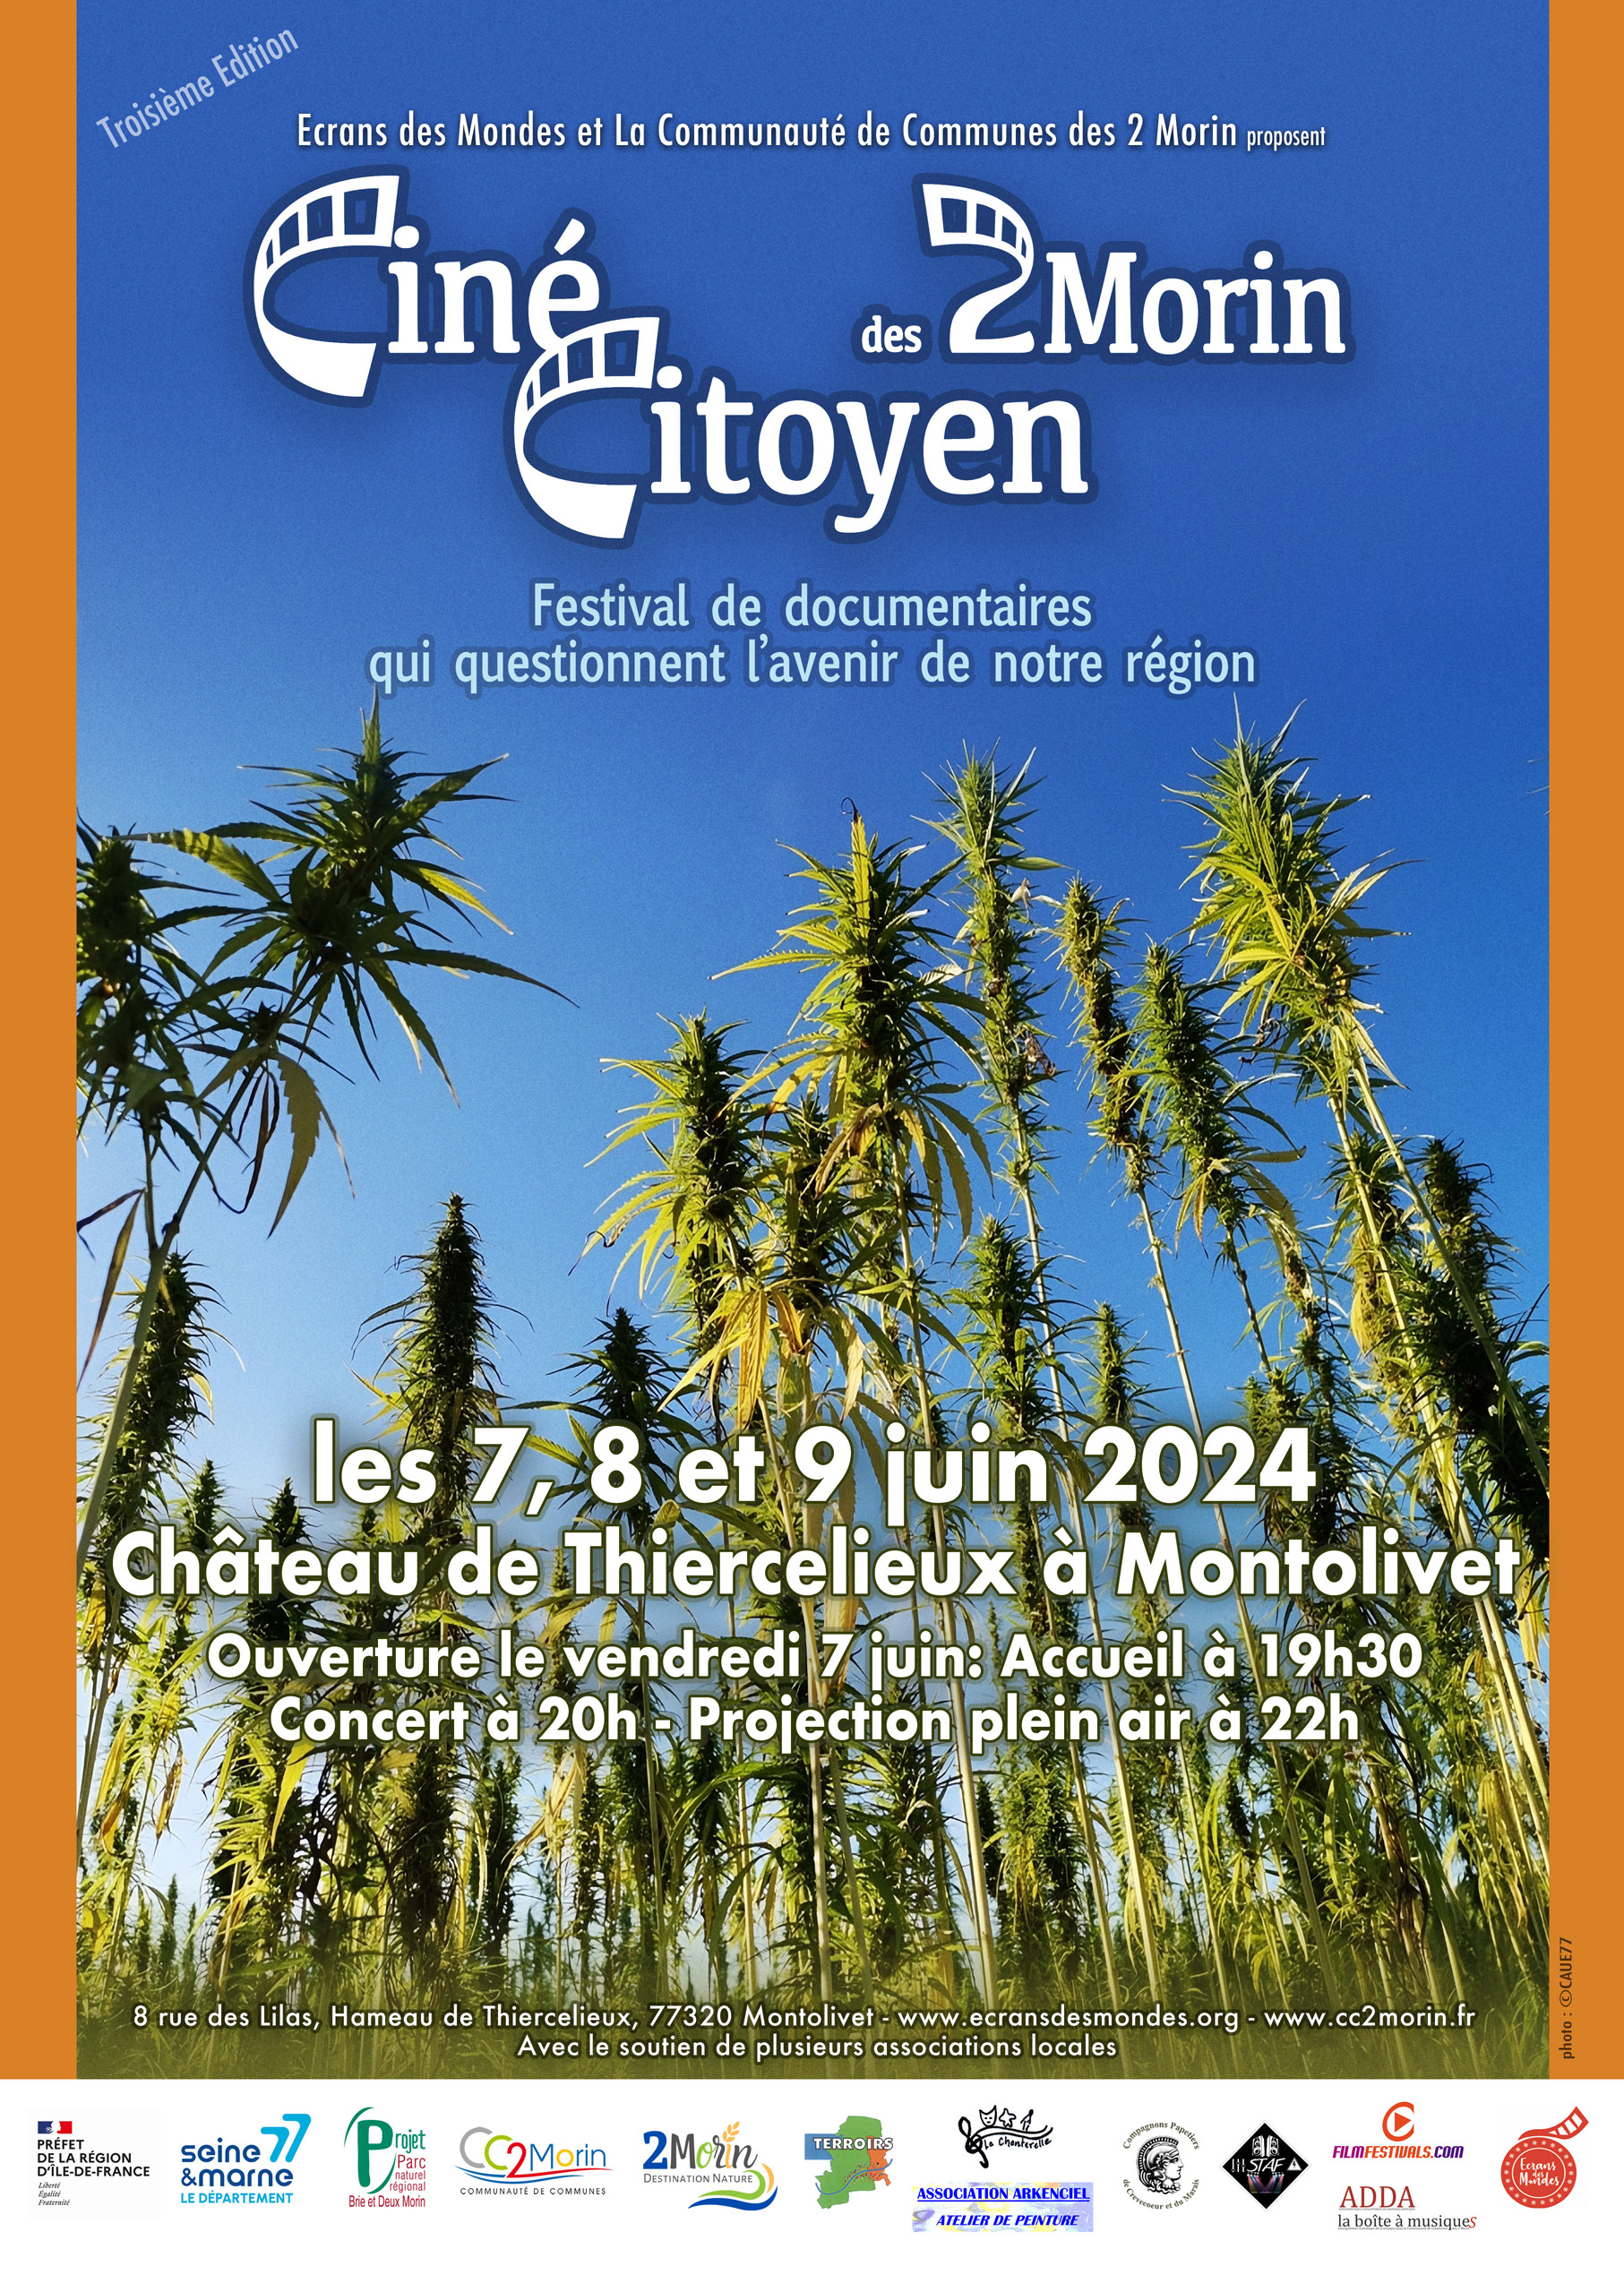 Jazz au festival Ciné-citoyen @ Thiercelieux